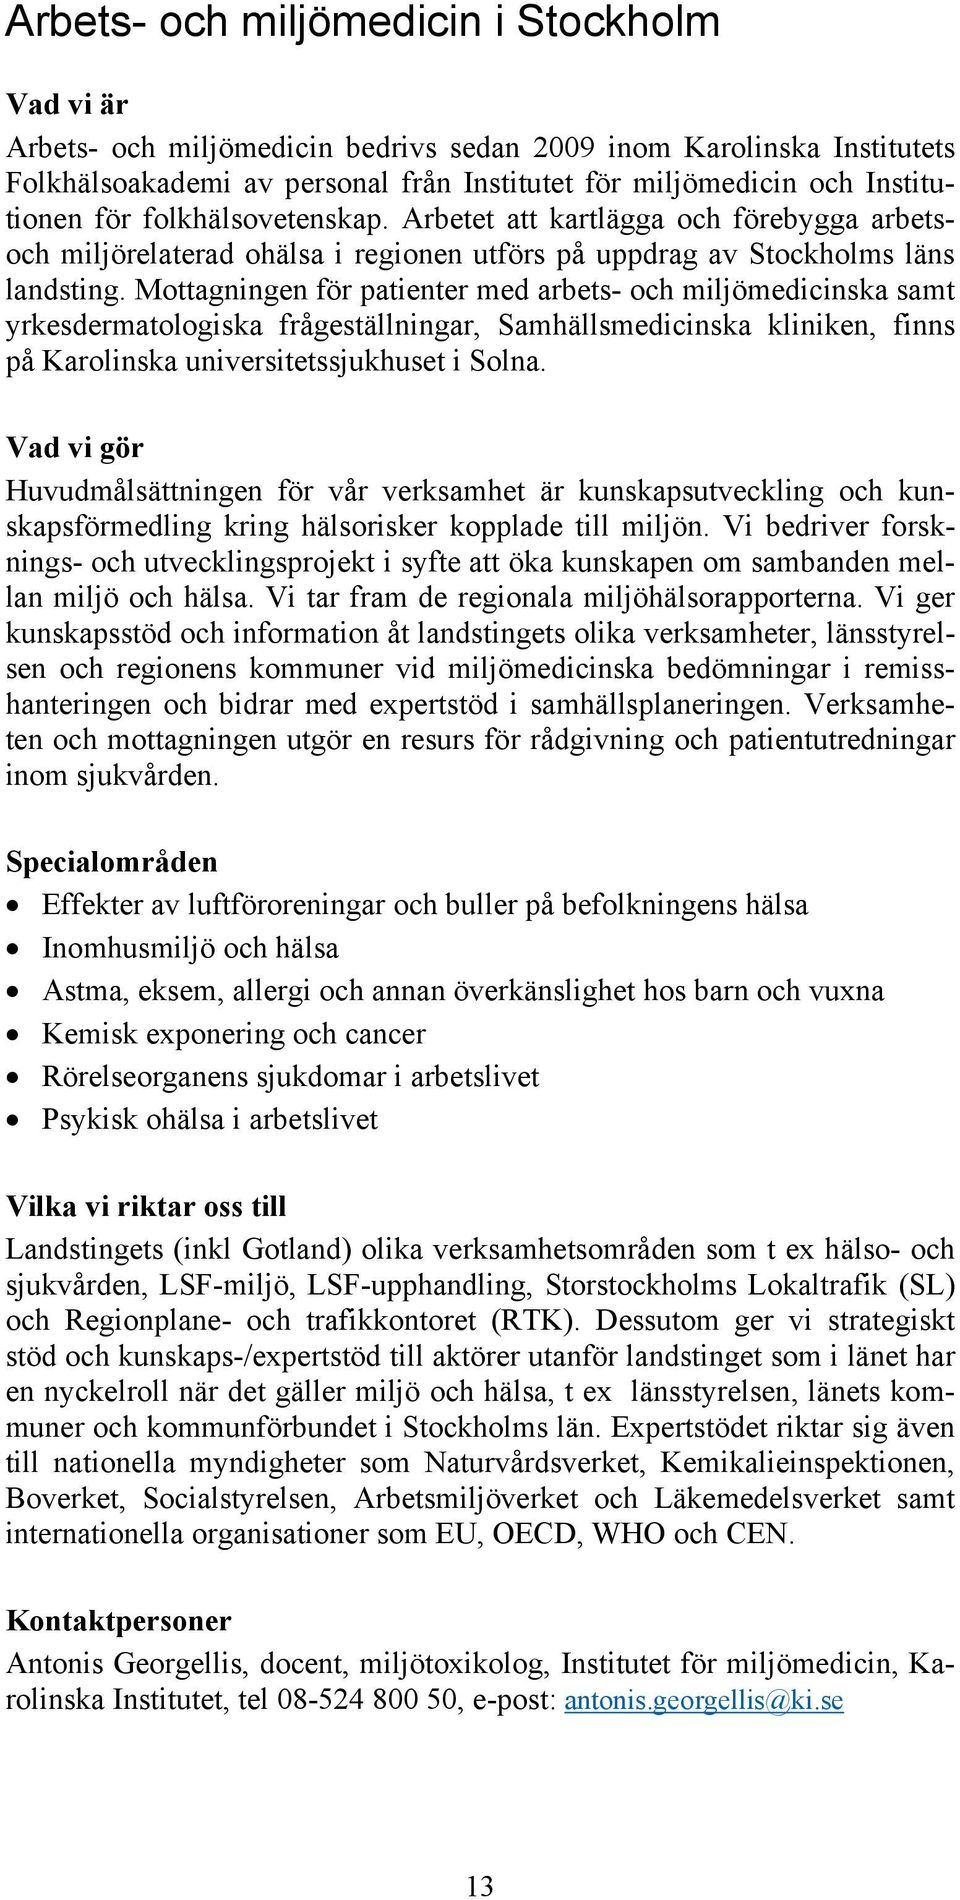 Mottagningen för patienter med arbets- och miljömedicinska samt yrkesdermatologiska frågeställningar, Samhällsmedicinska kliniken, finns på Karolinska universitetssjukhuset i Solna.